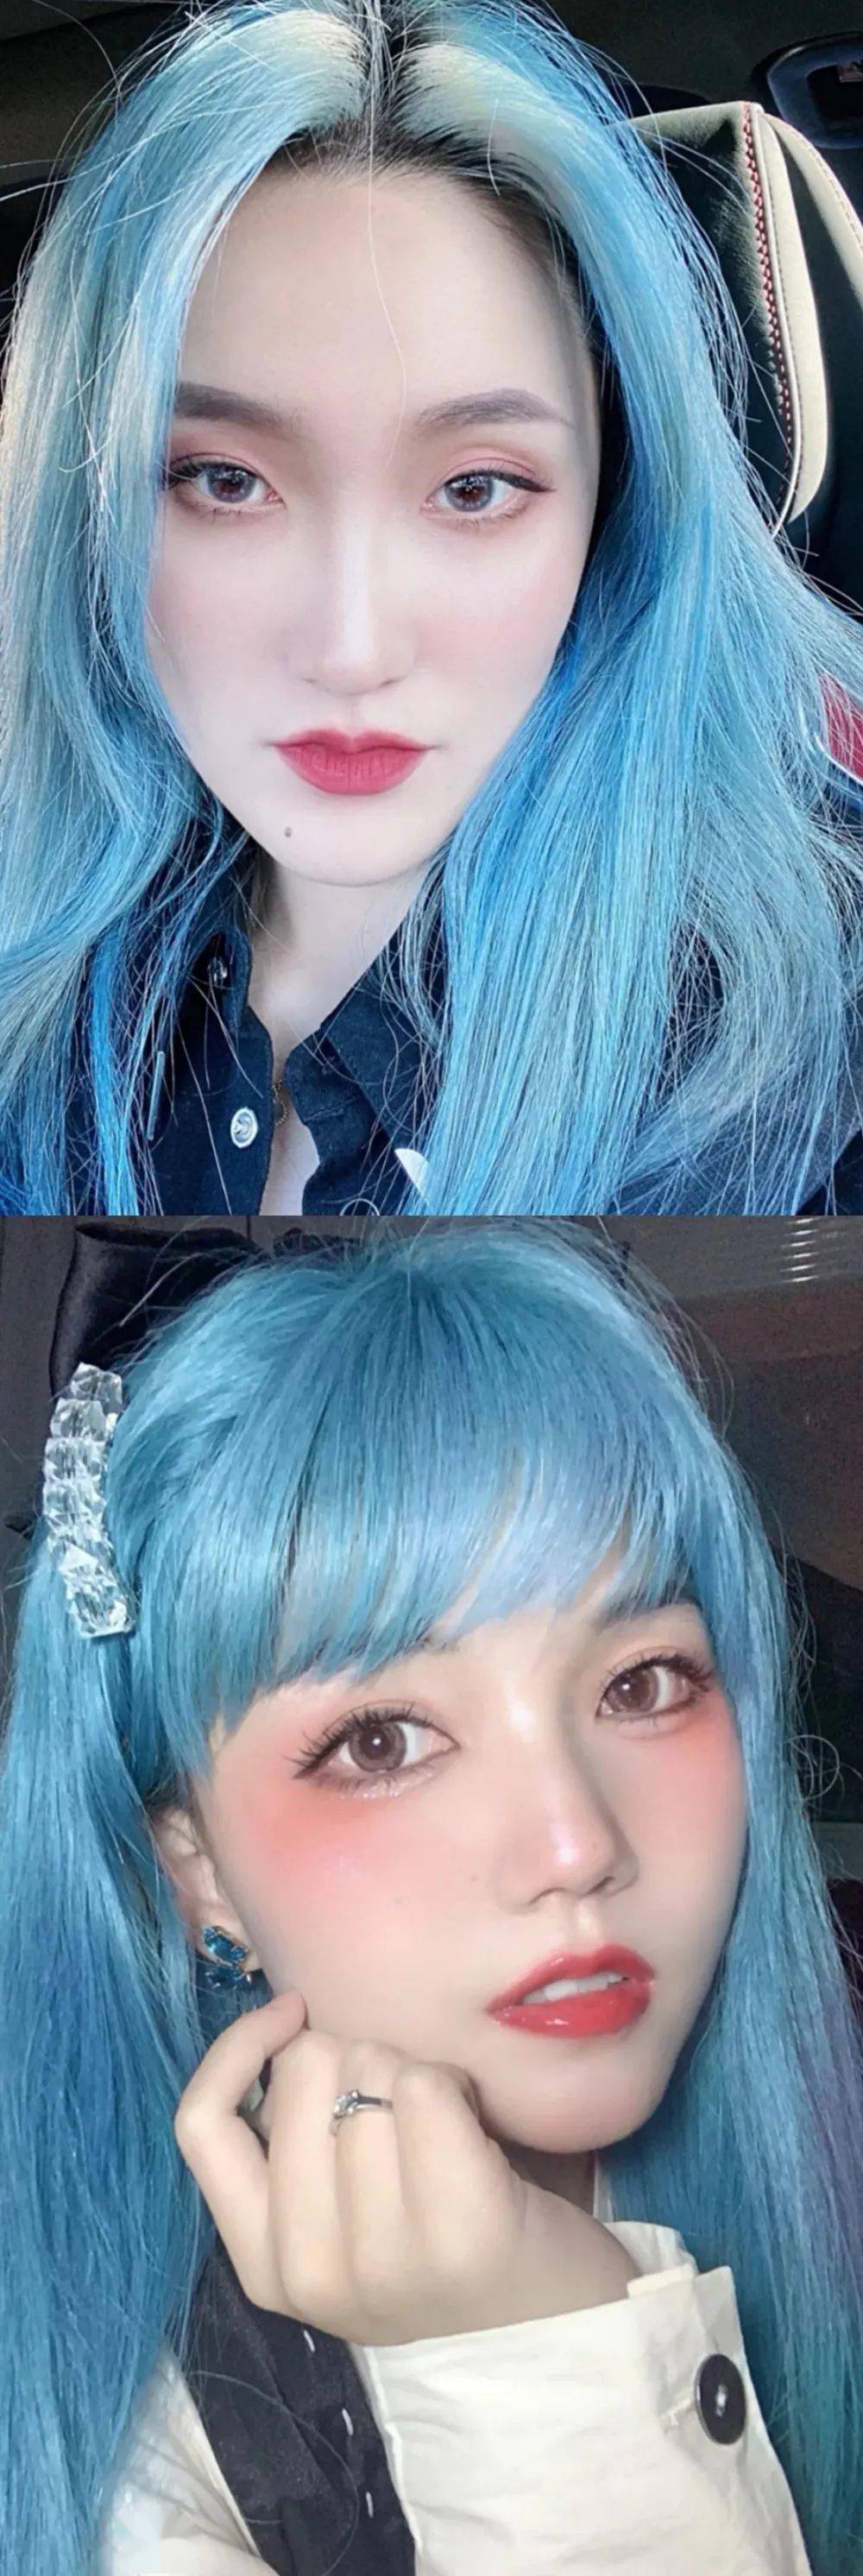 69冰蓝色超适合酷酷小姐姐的发色,对黄皮友好,需